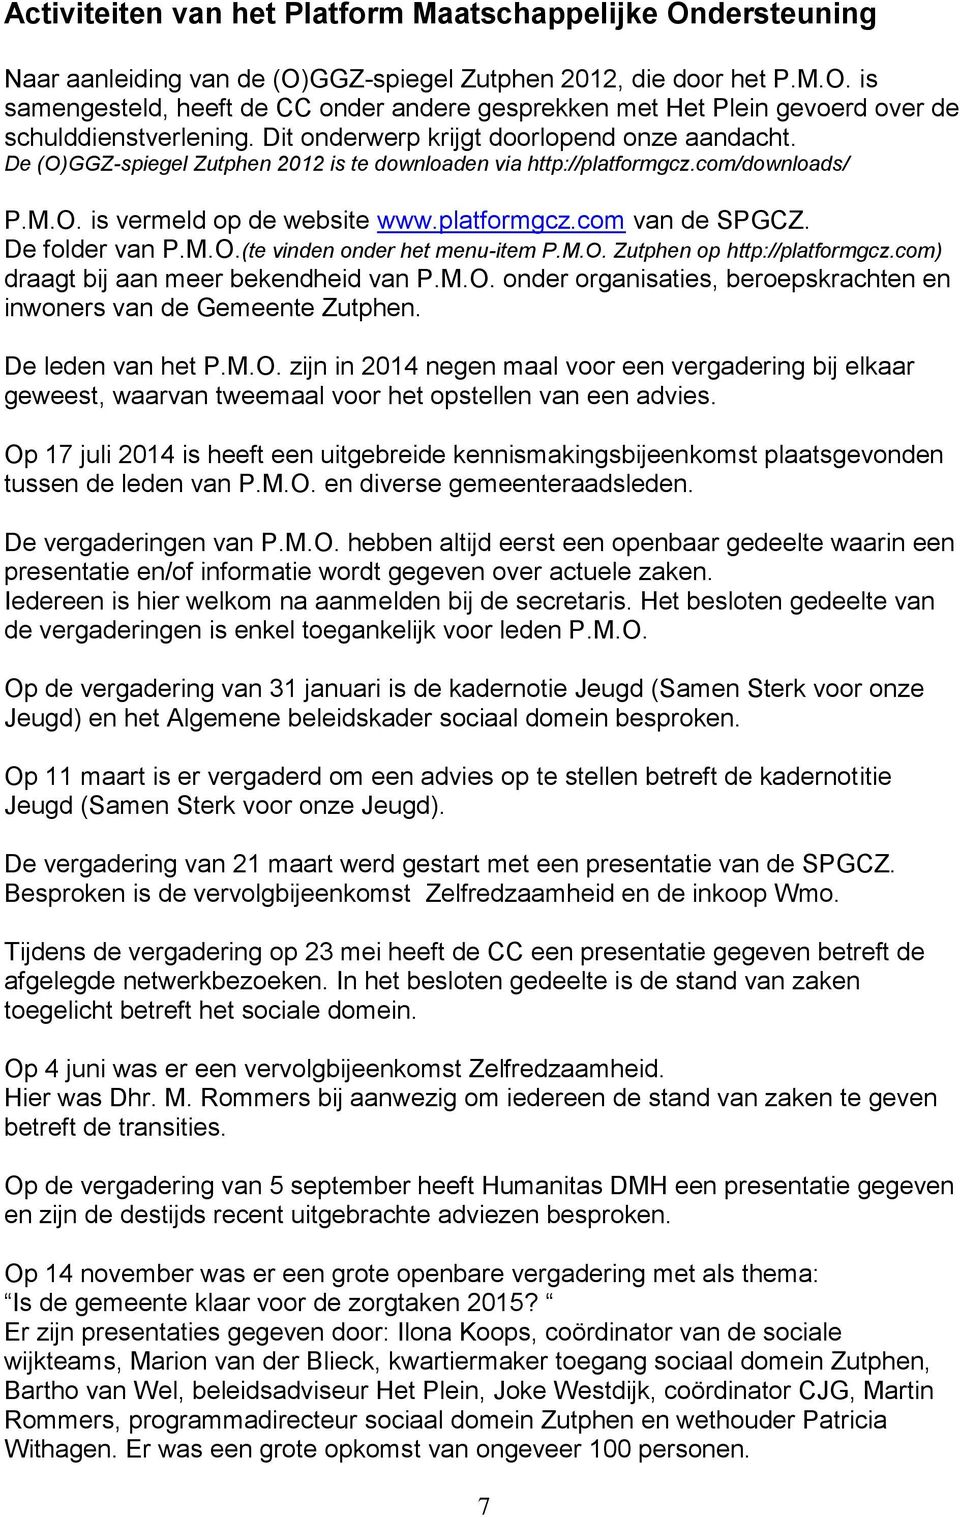 De folder van P.M.O.(te vinden onder het menu-item P.M.O. Zutphen op http://platformgcz.com) draagt bij aan meer bekendheid van P.M.O. onder organisaties, beroepskrachten en inwoners van de Gemeente Zutphen.